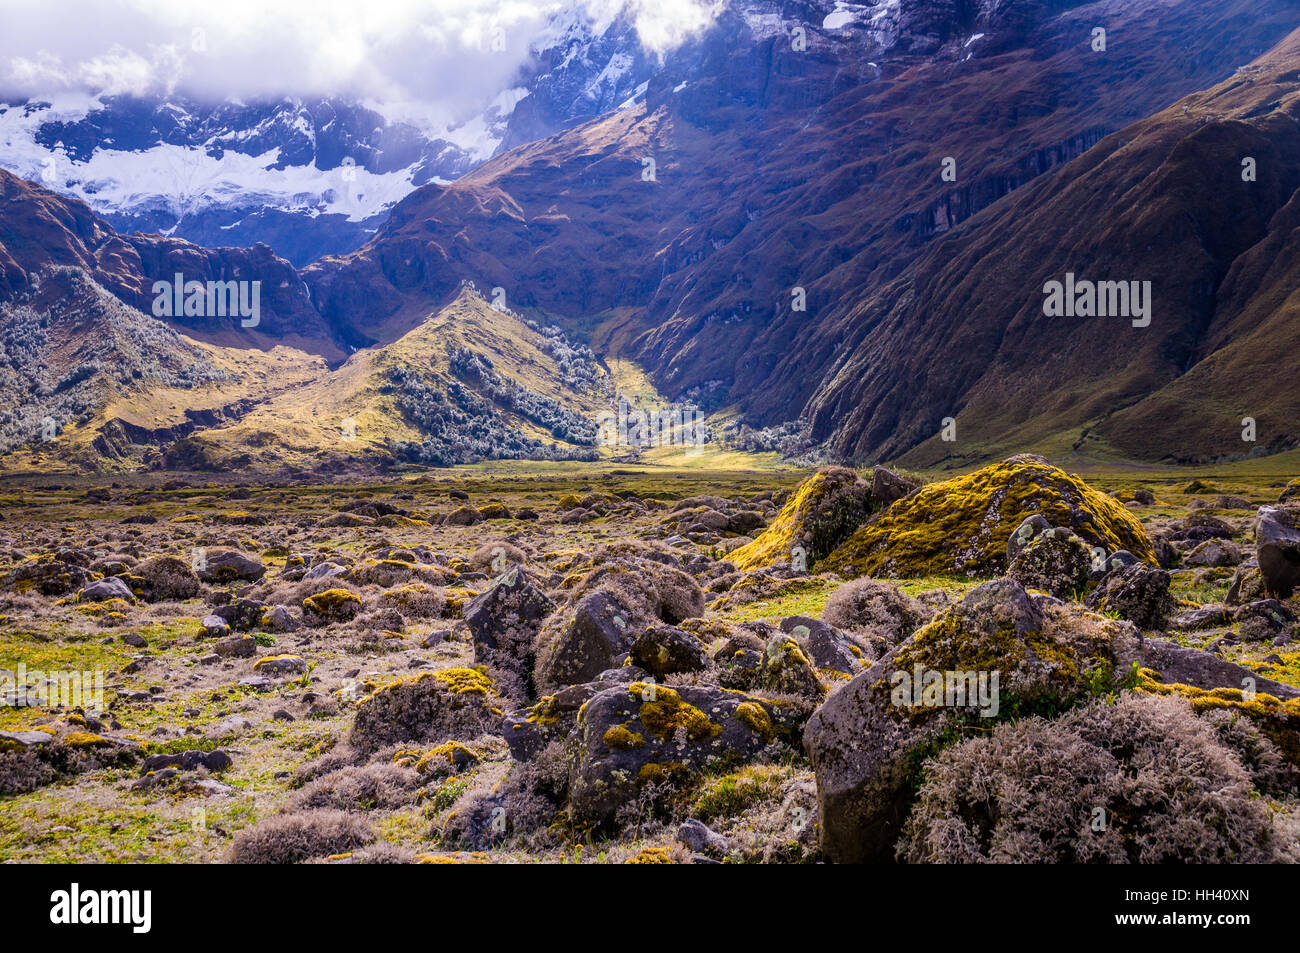 Andean landscape near Riobamba, Ecuador Stock Photo